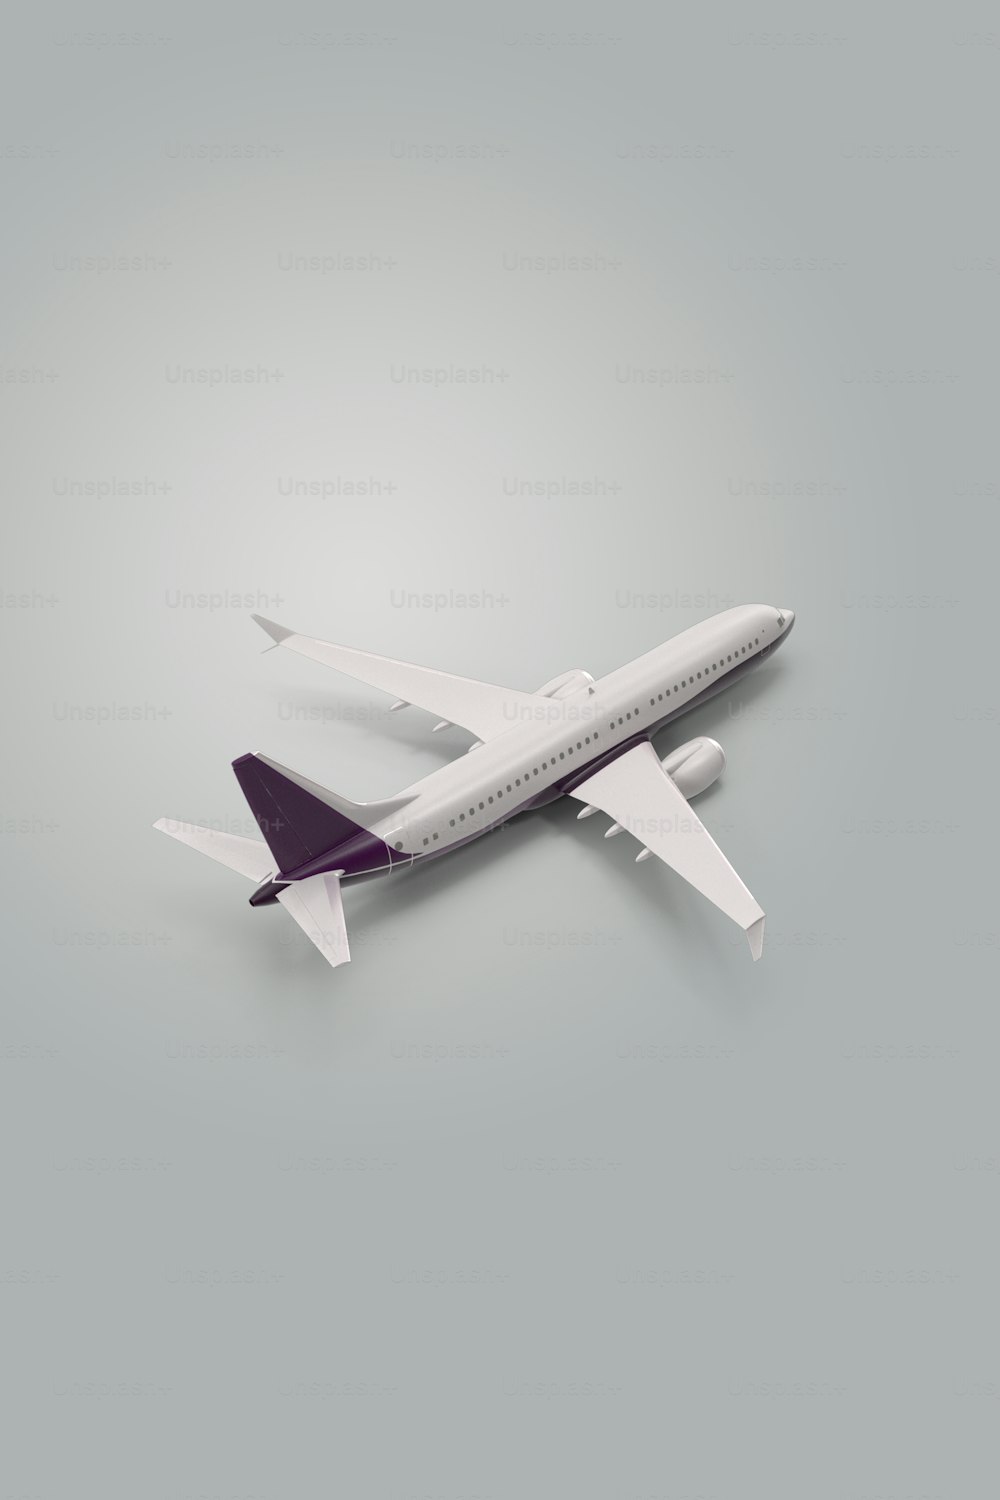 Ein Modell eines Flugzeugs auf grauem Hintergrund